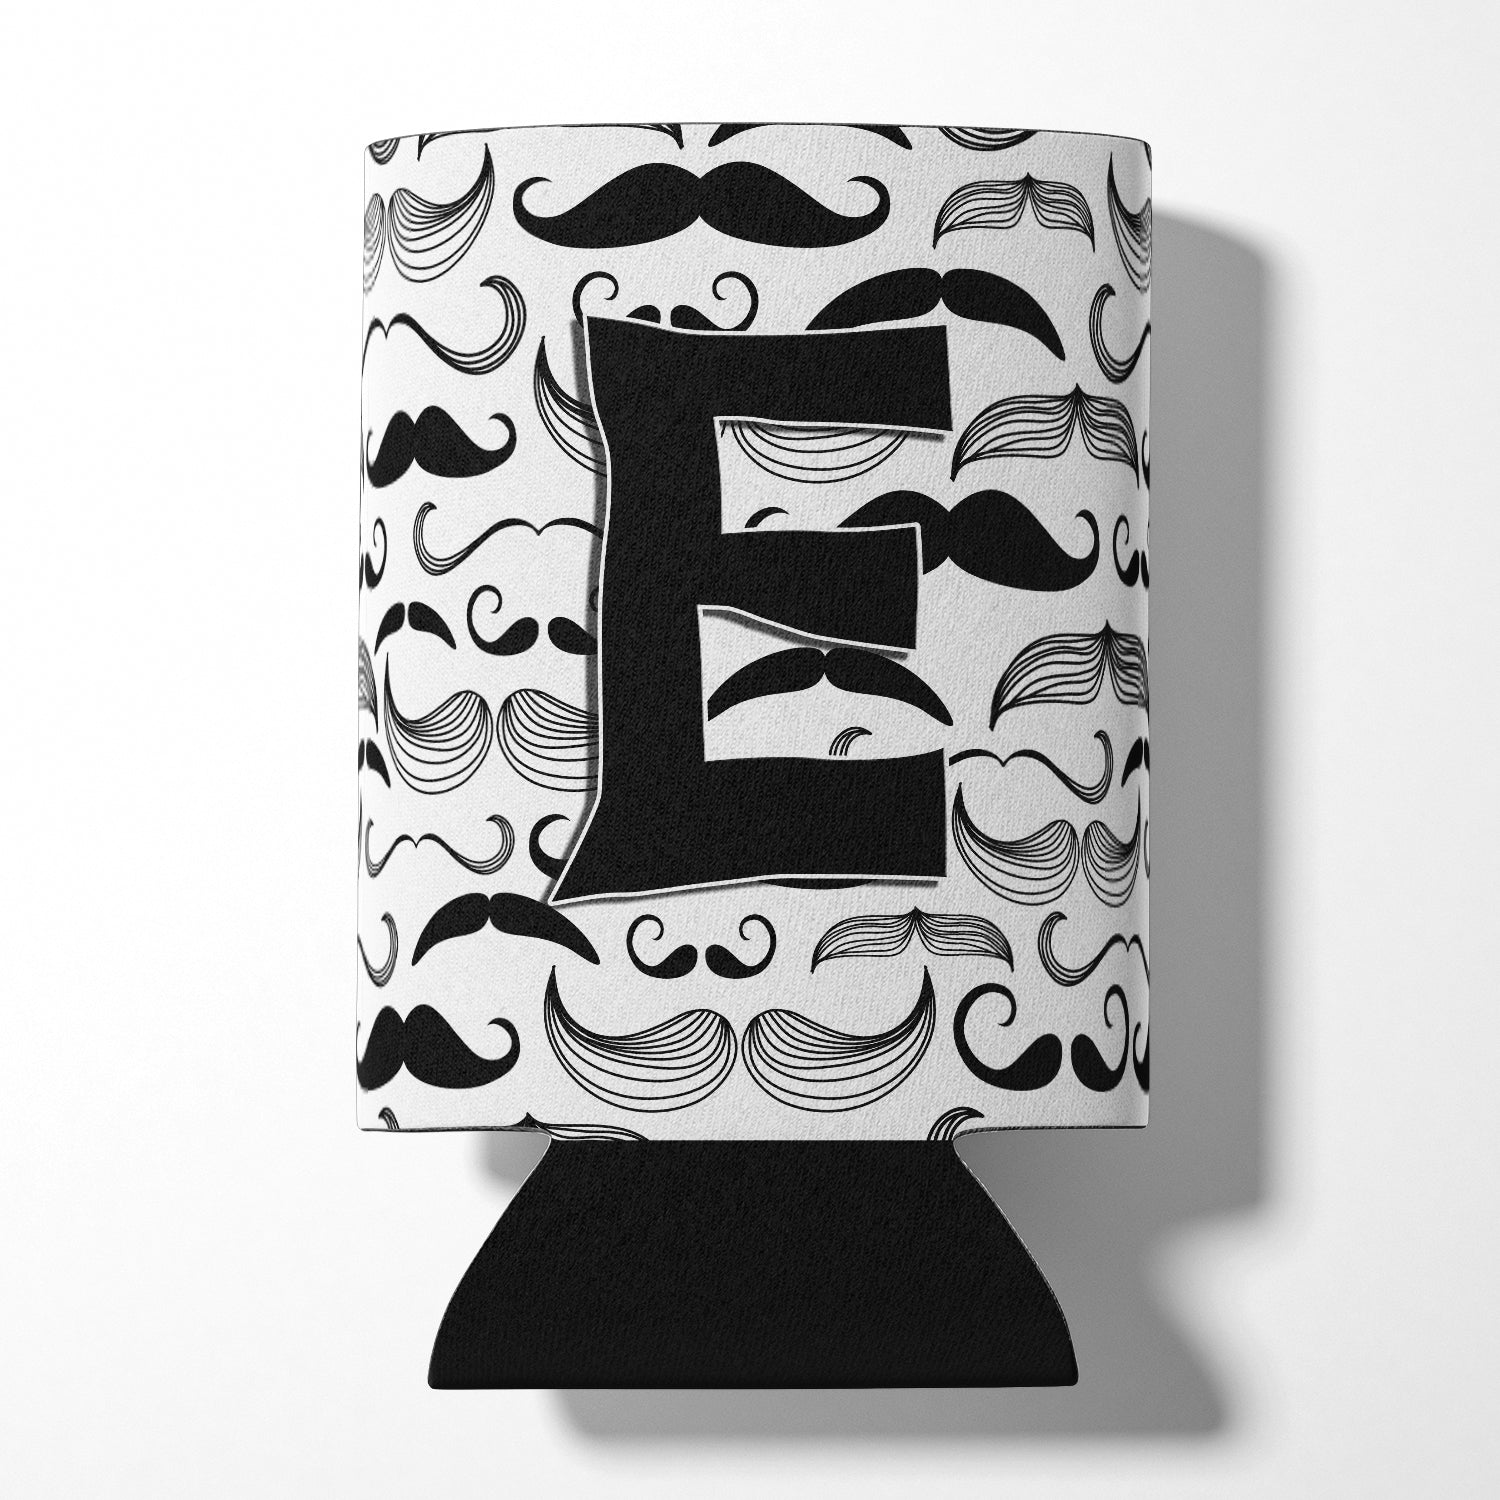 Letter E Moustache Initial Can or Bottle Hugger CJ2009-ECC